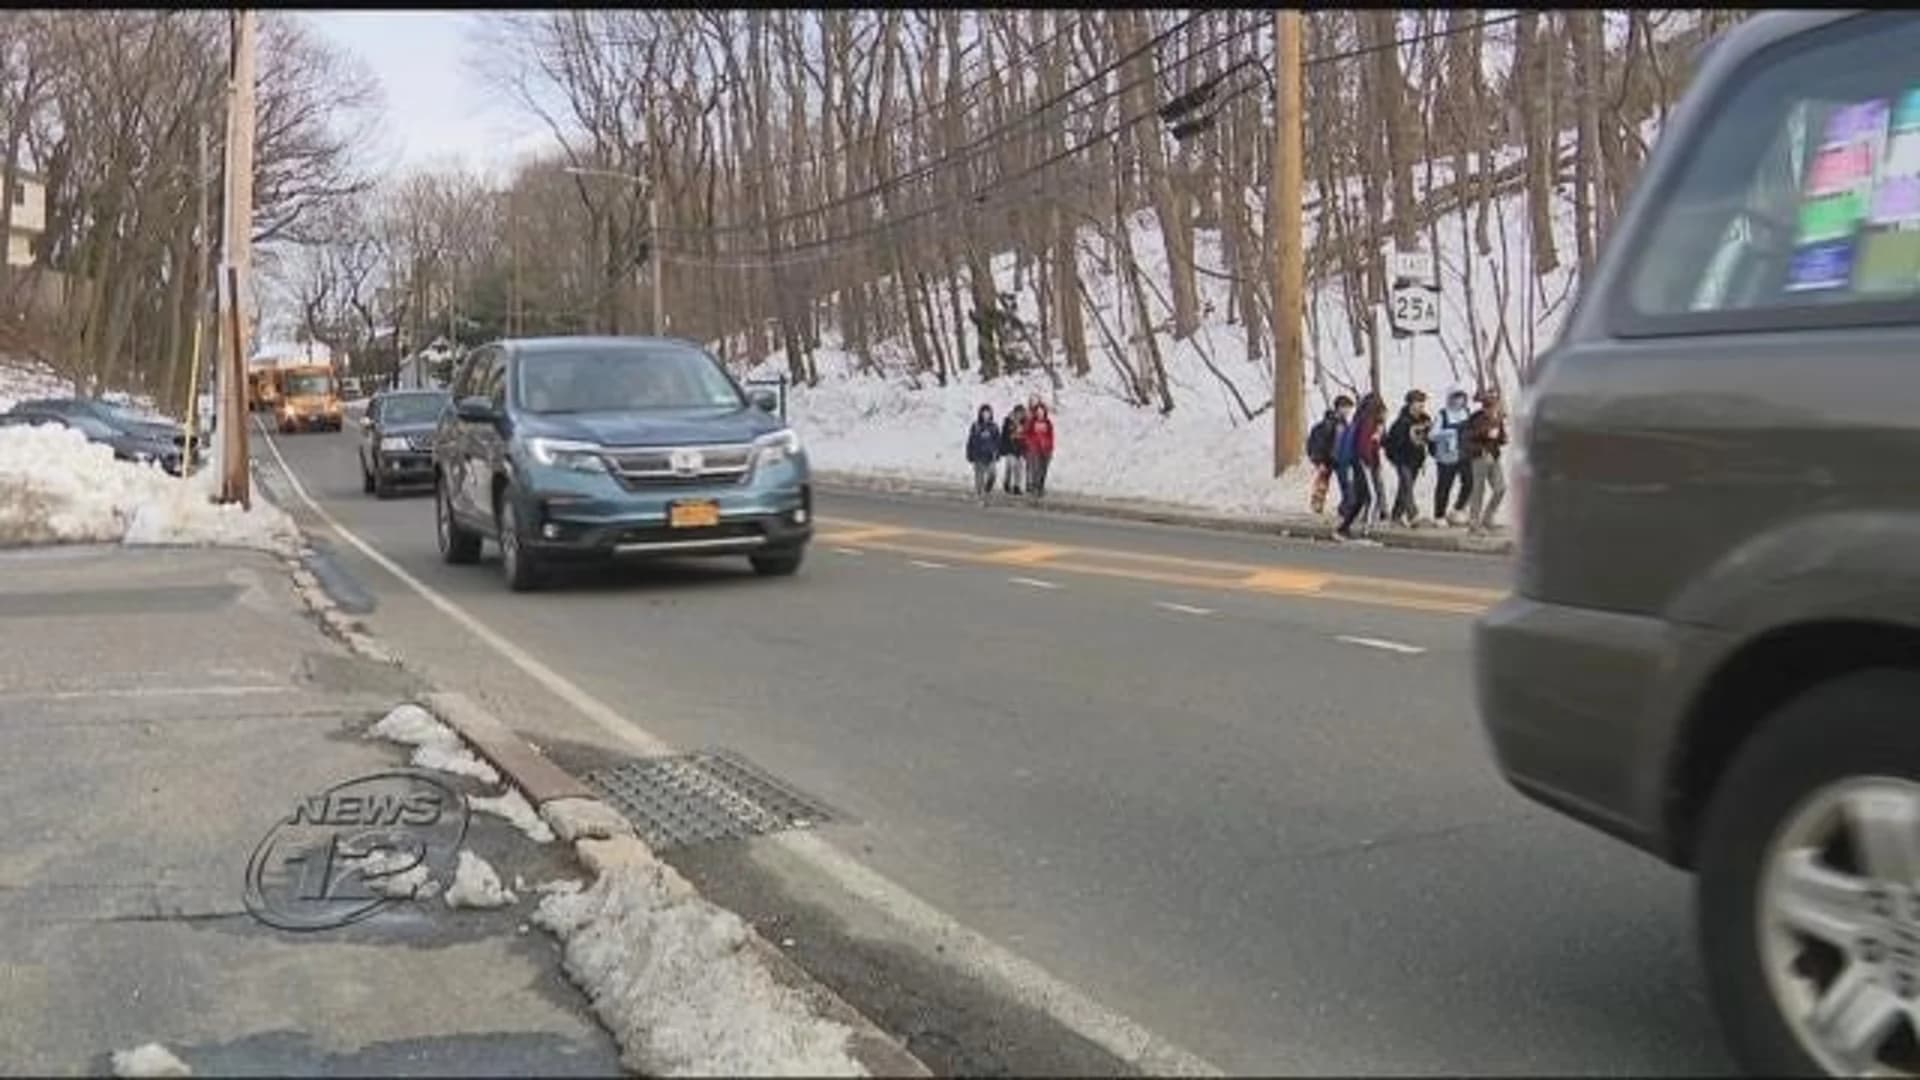 Parents: ‘Dangerous’ walk to school is ‘accident waiting to happen’